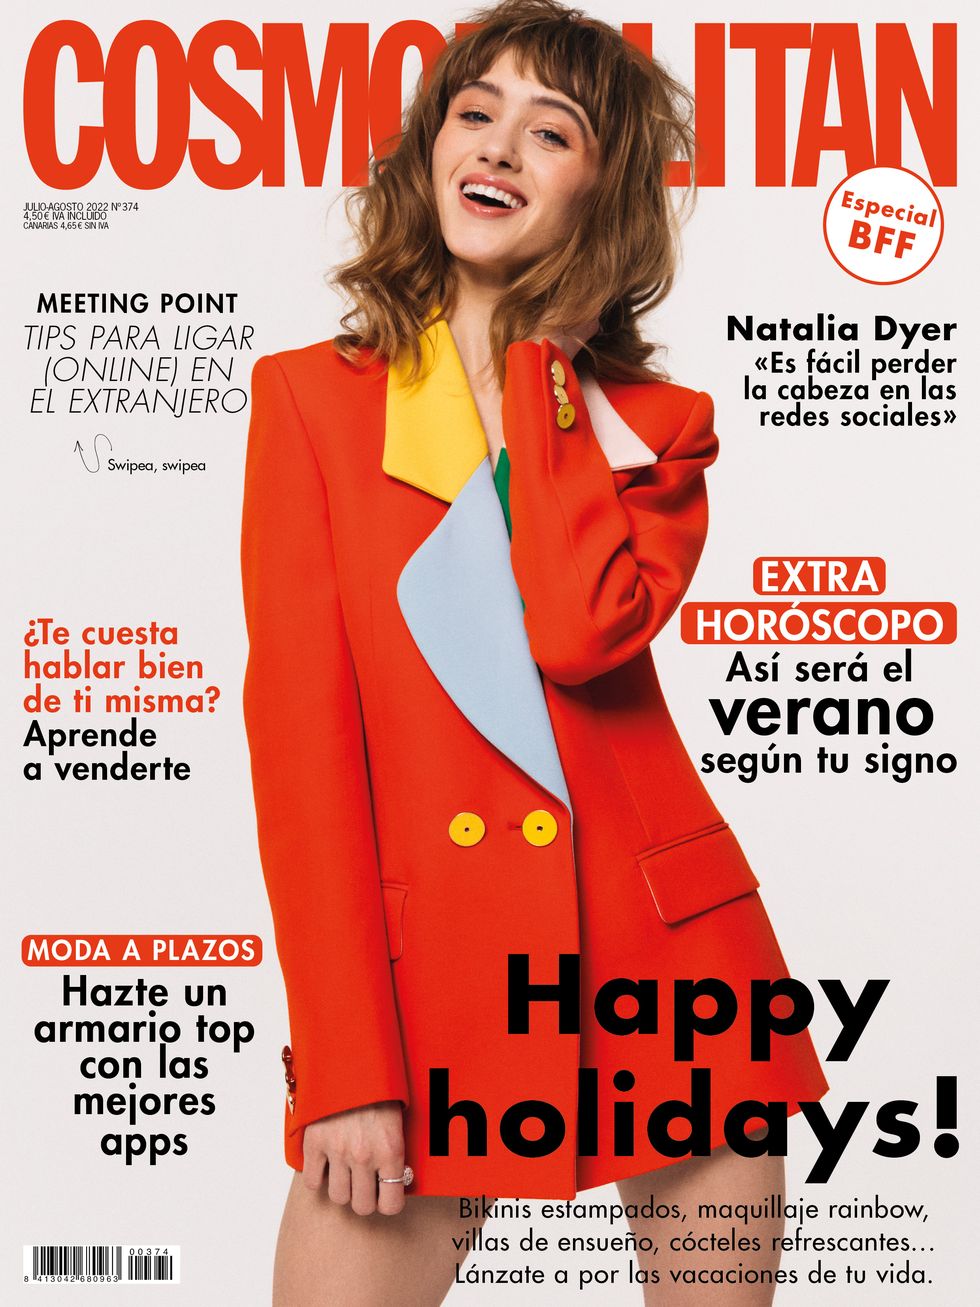 natalia dyer es la chica de portada de cosmopolitan julio y agosto